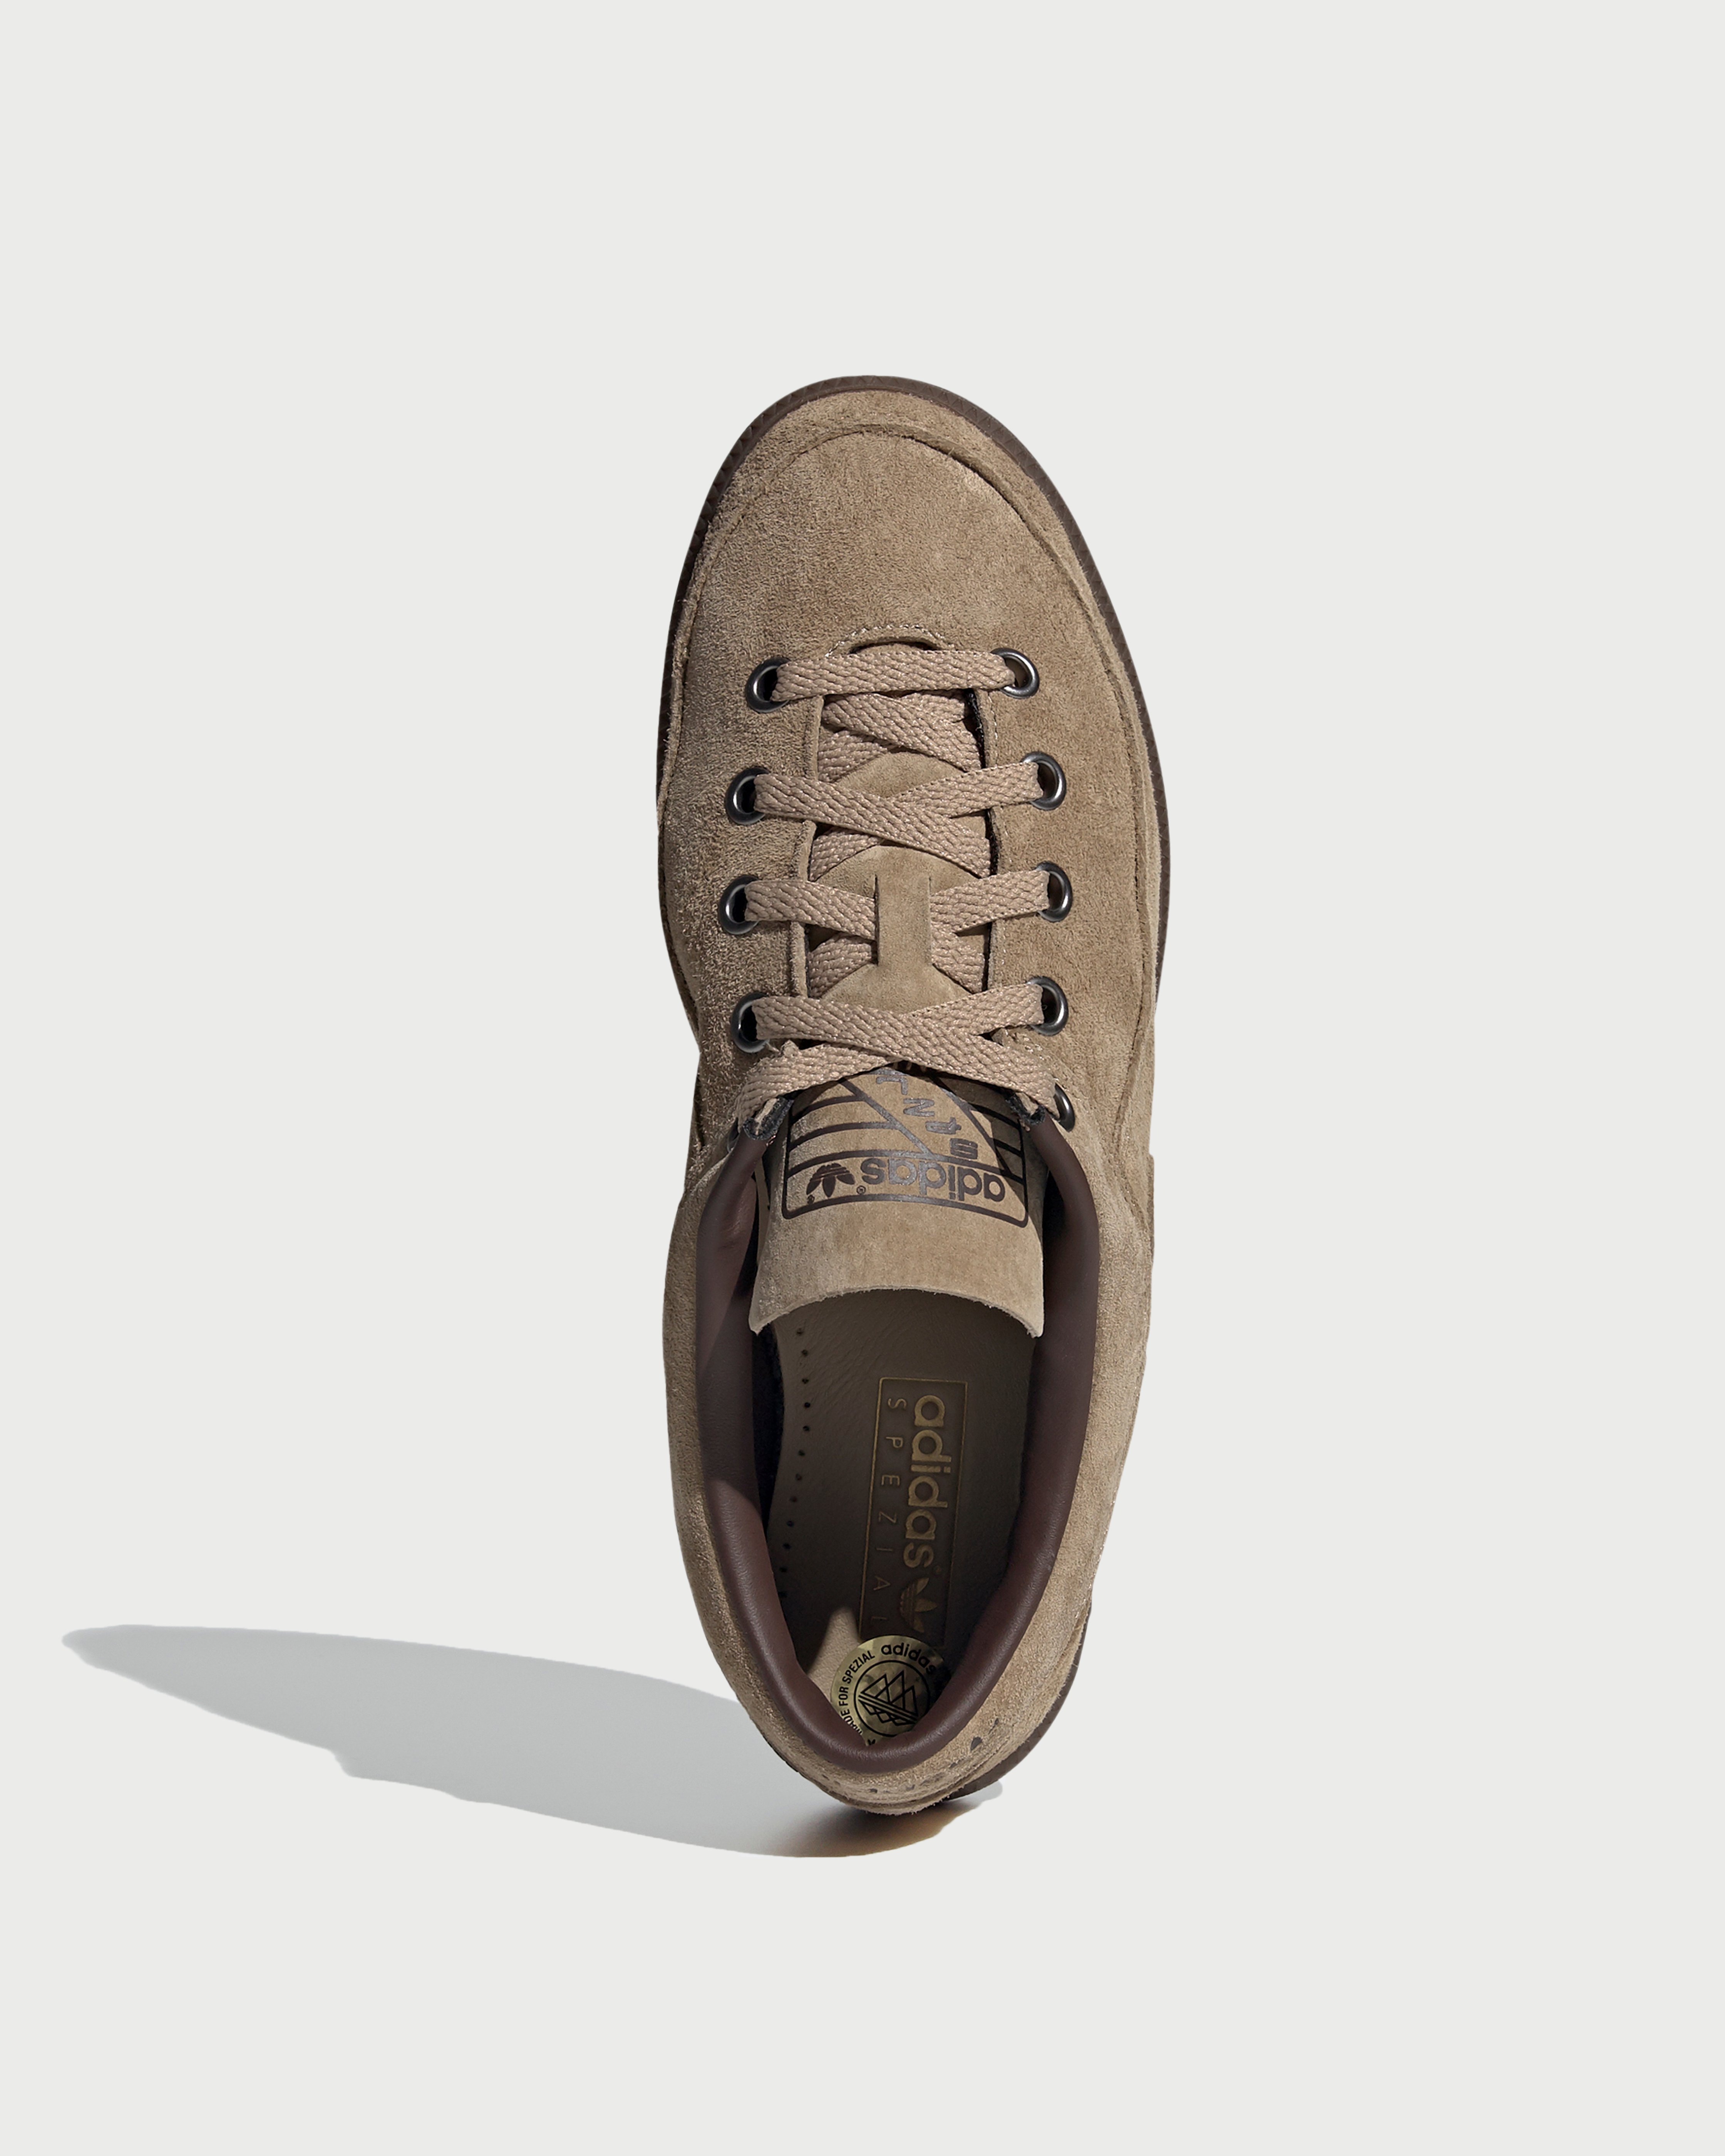 Adidas - Newrad Spezial Brown - Footwear - Brown - Image 3